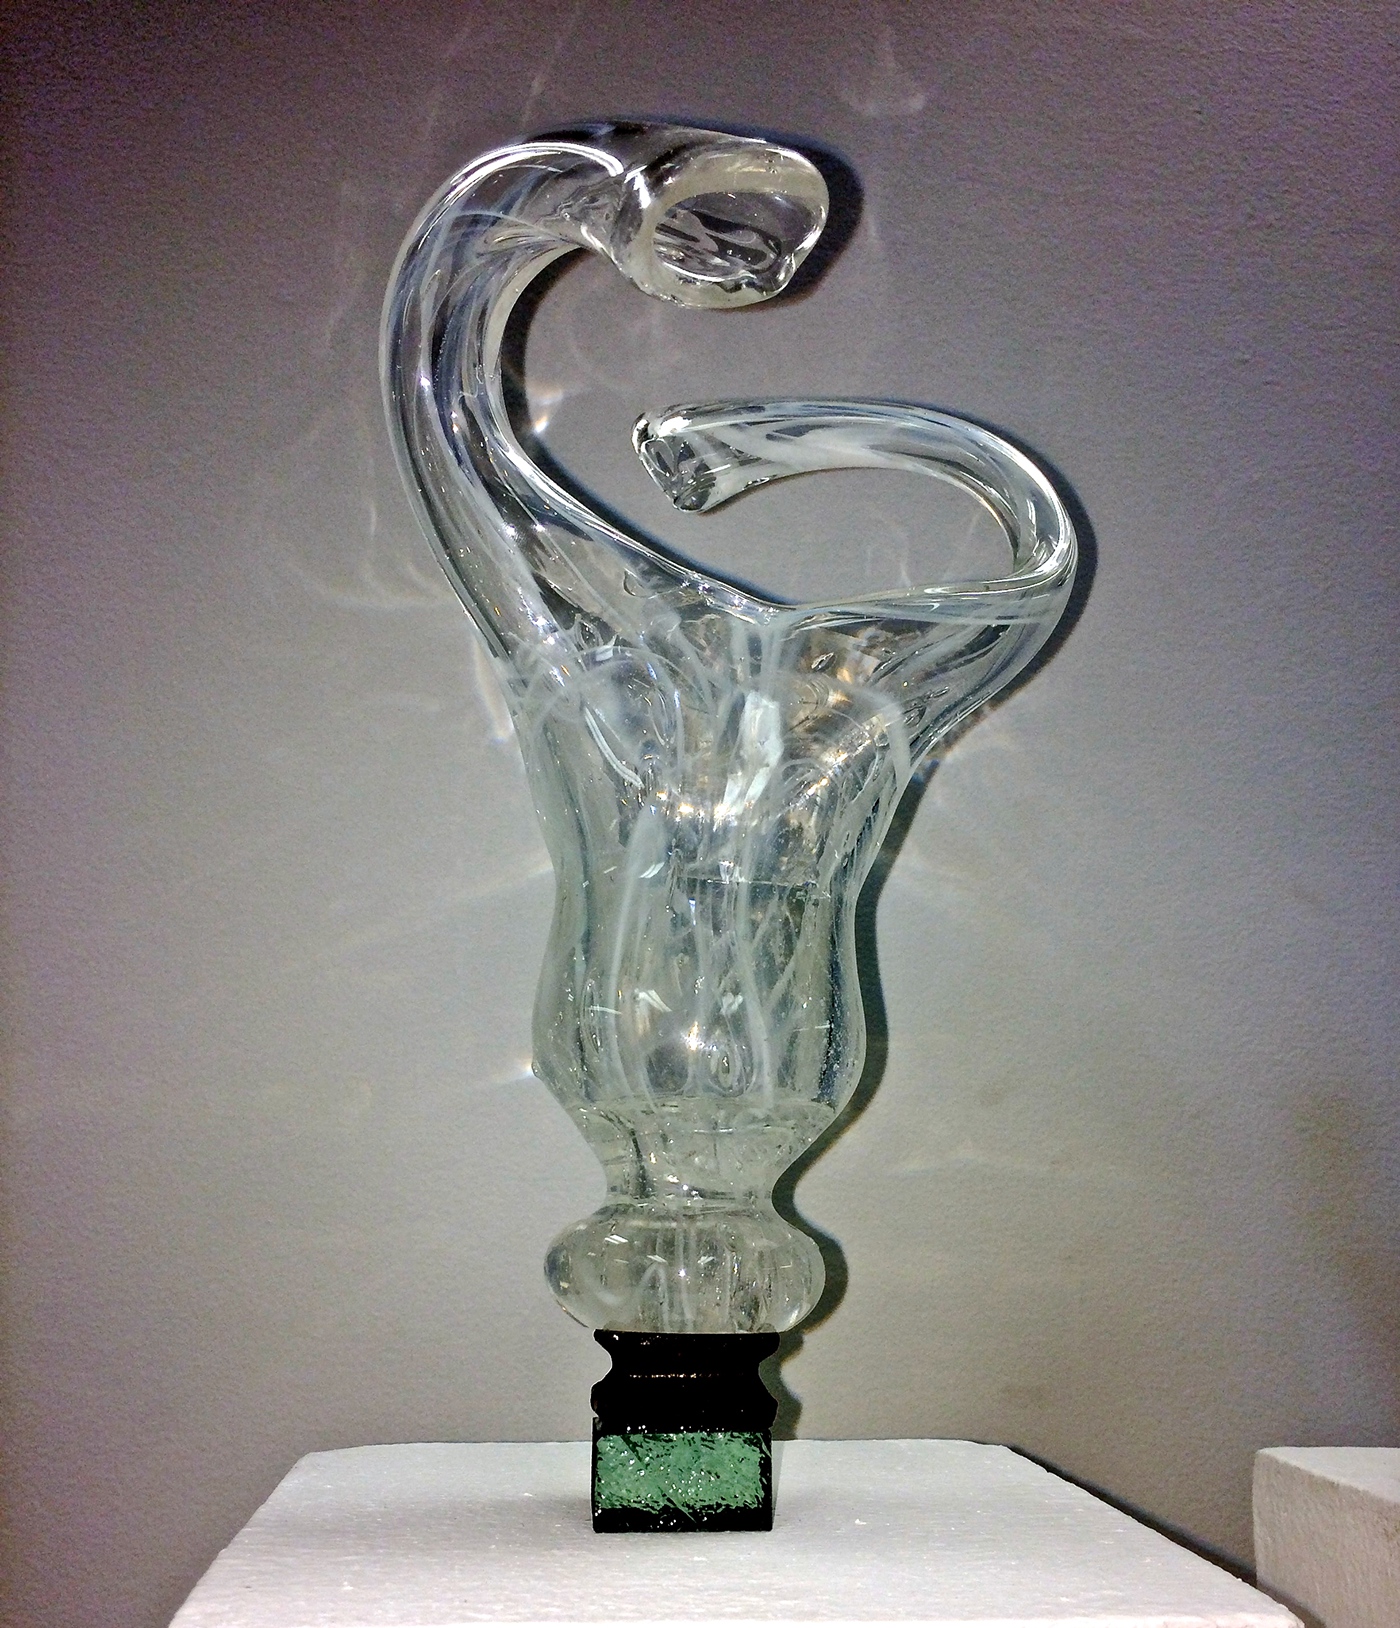 sculpture glass handmade glassblowing glass sculpture glasswork fine art